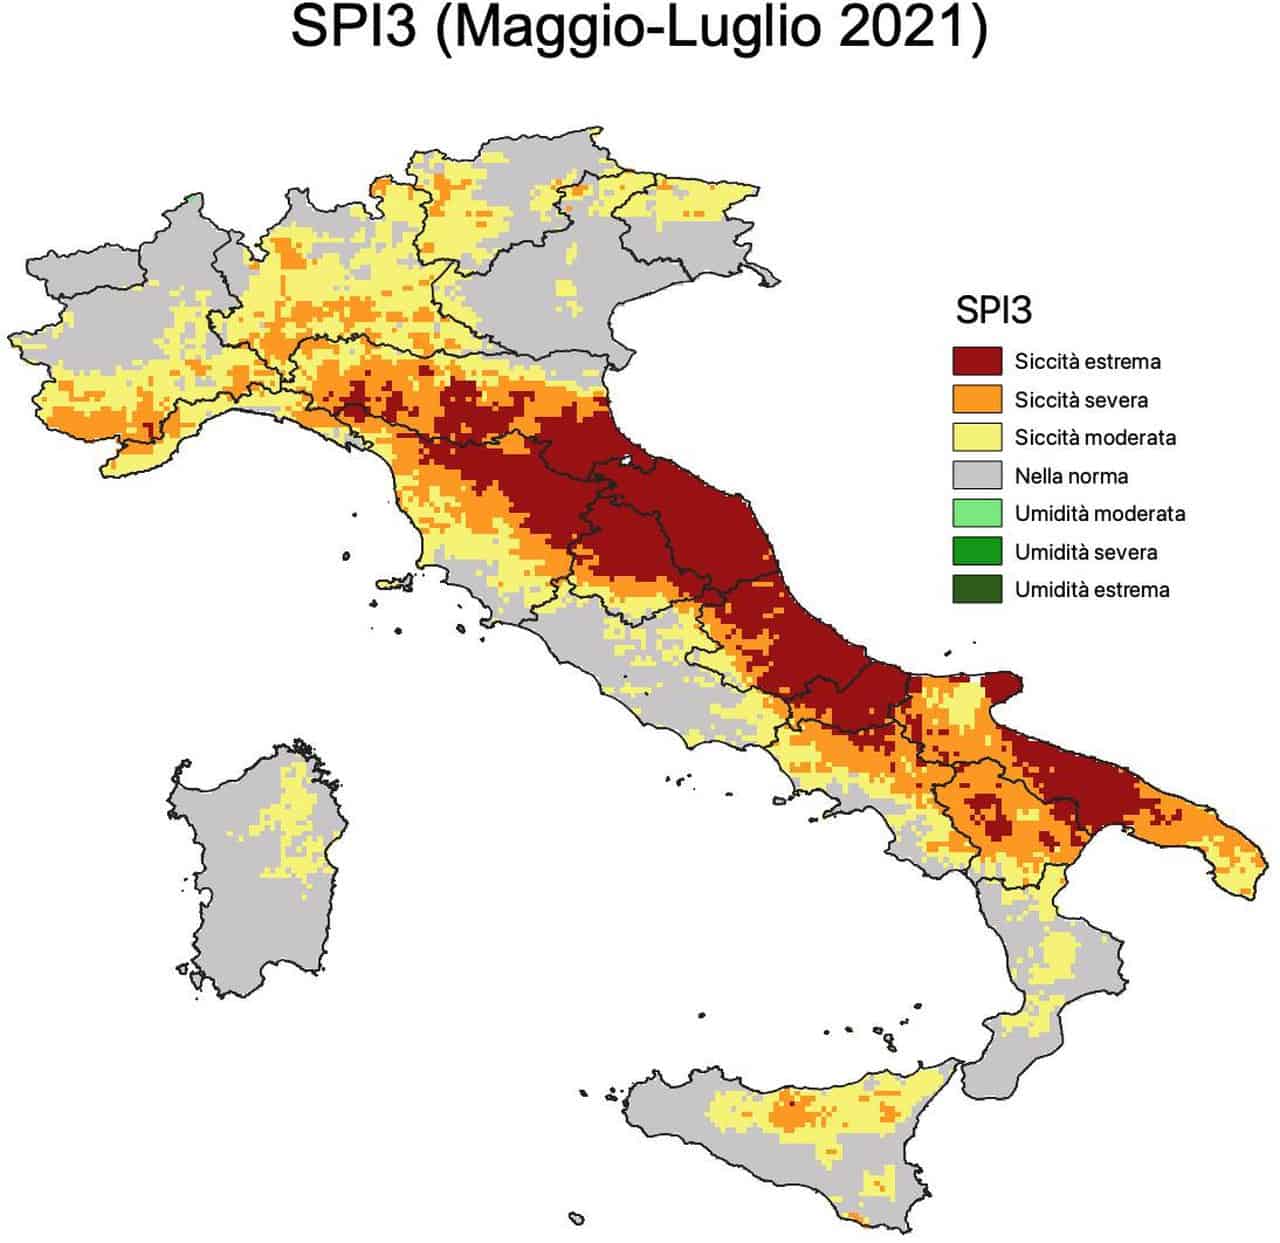 Italia spaccata e tante aree sono in pericolo siccità estrema